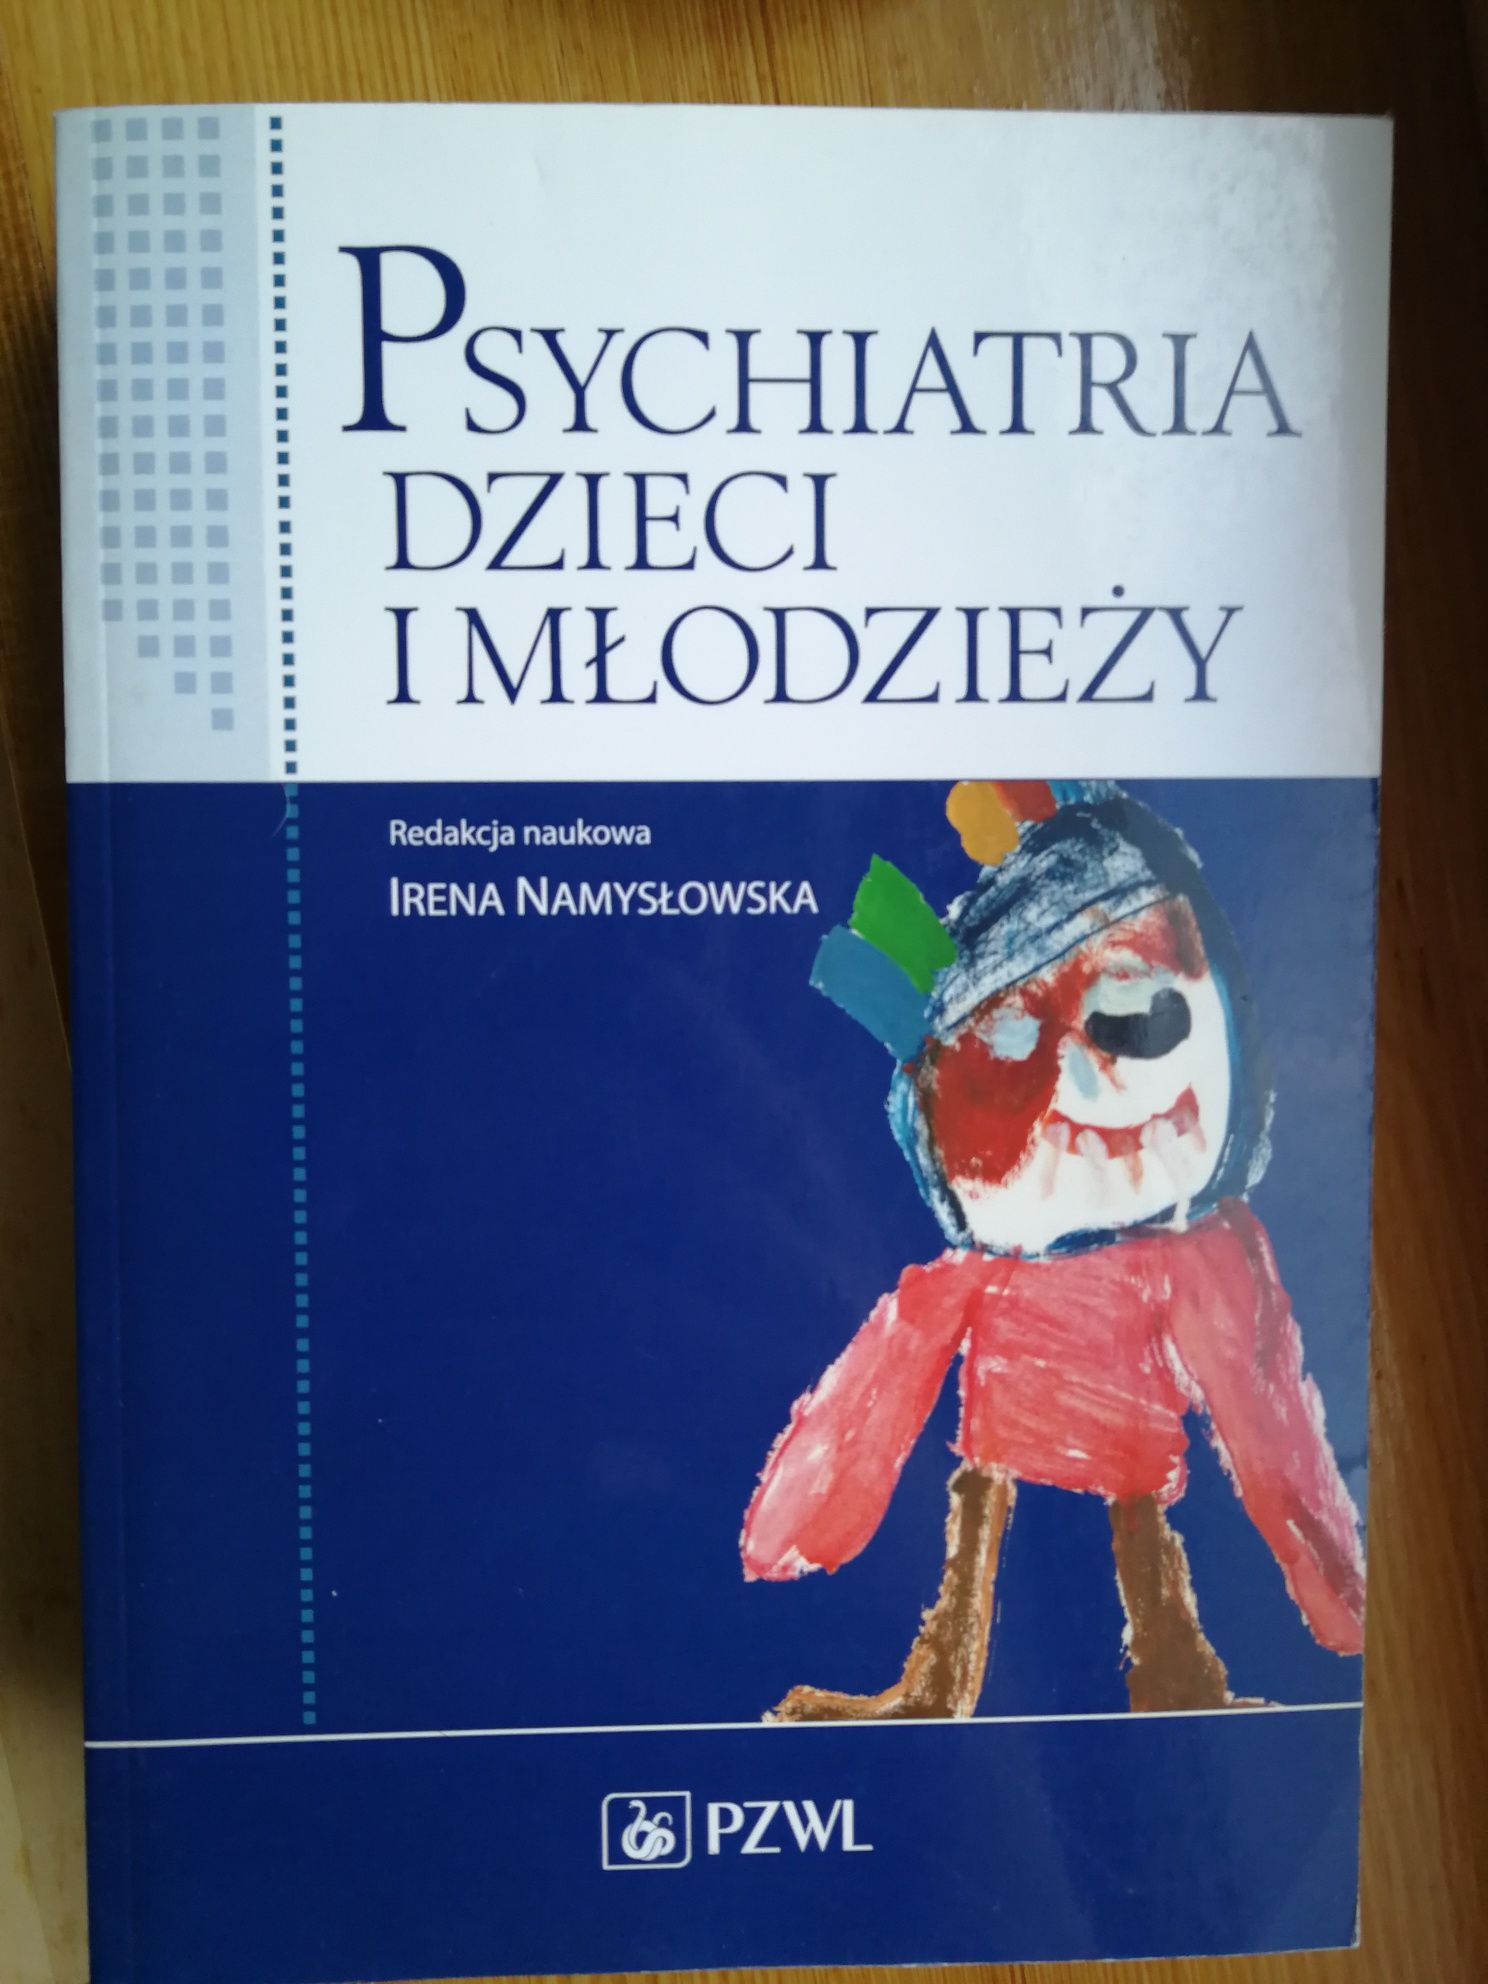 Psychiatria dzieci i młodzieży. Red. Namysłowska